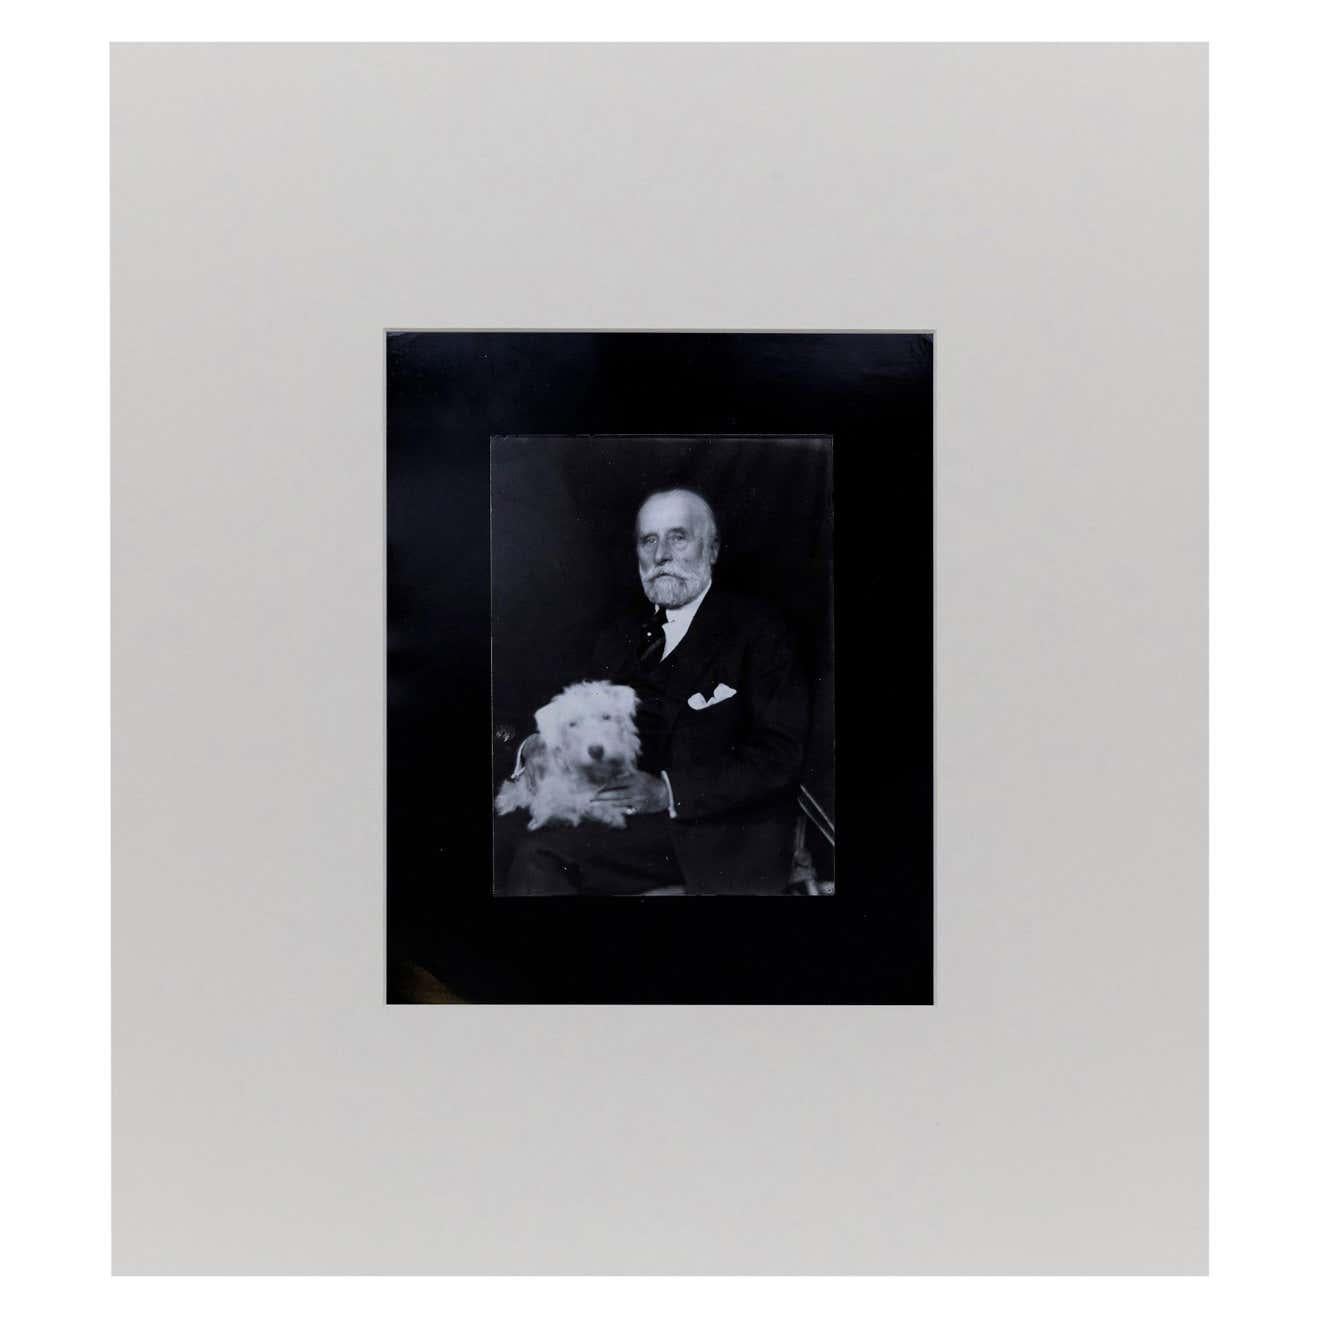 Portrait du couturier français Jacques Doucet photographié par Man Ray, vers 1926.

Un tirage posthume à partir du négatif original en 1977 par Pierre Gassmann.

Gélatine bromure d'argent.

Né (Philadelphie, 1890 - Paris, 1976) Emmanuel Radnitzky,